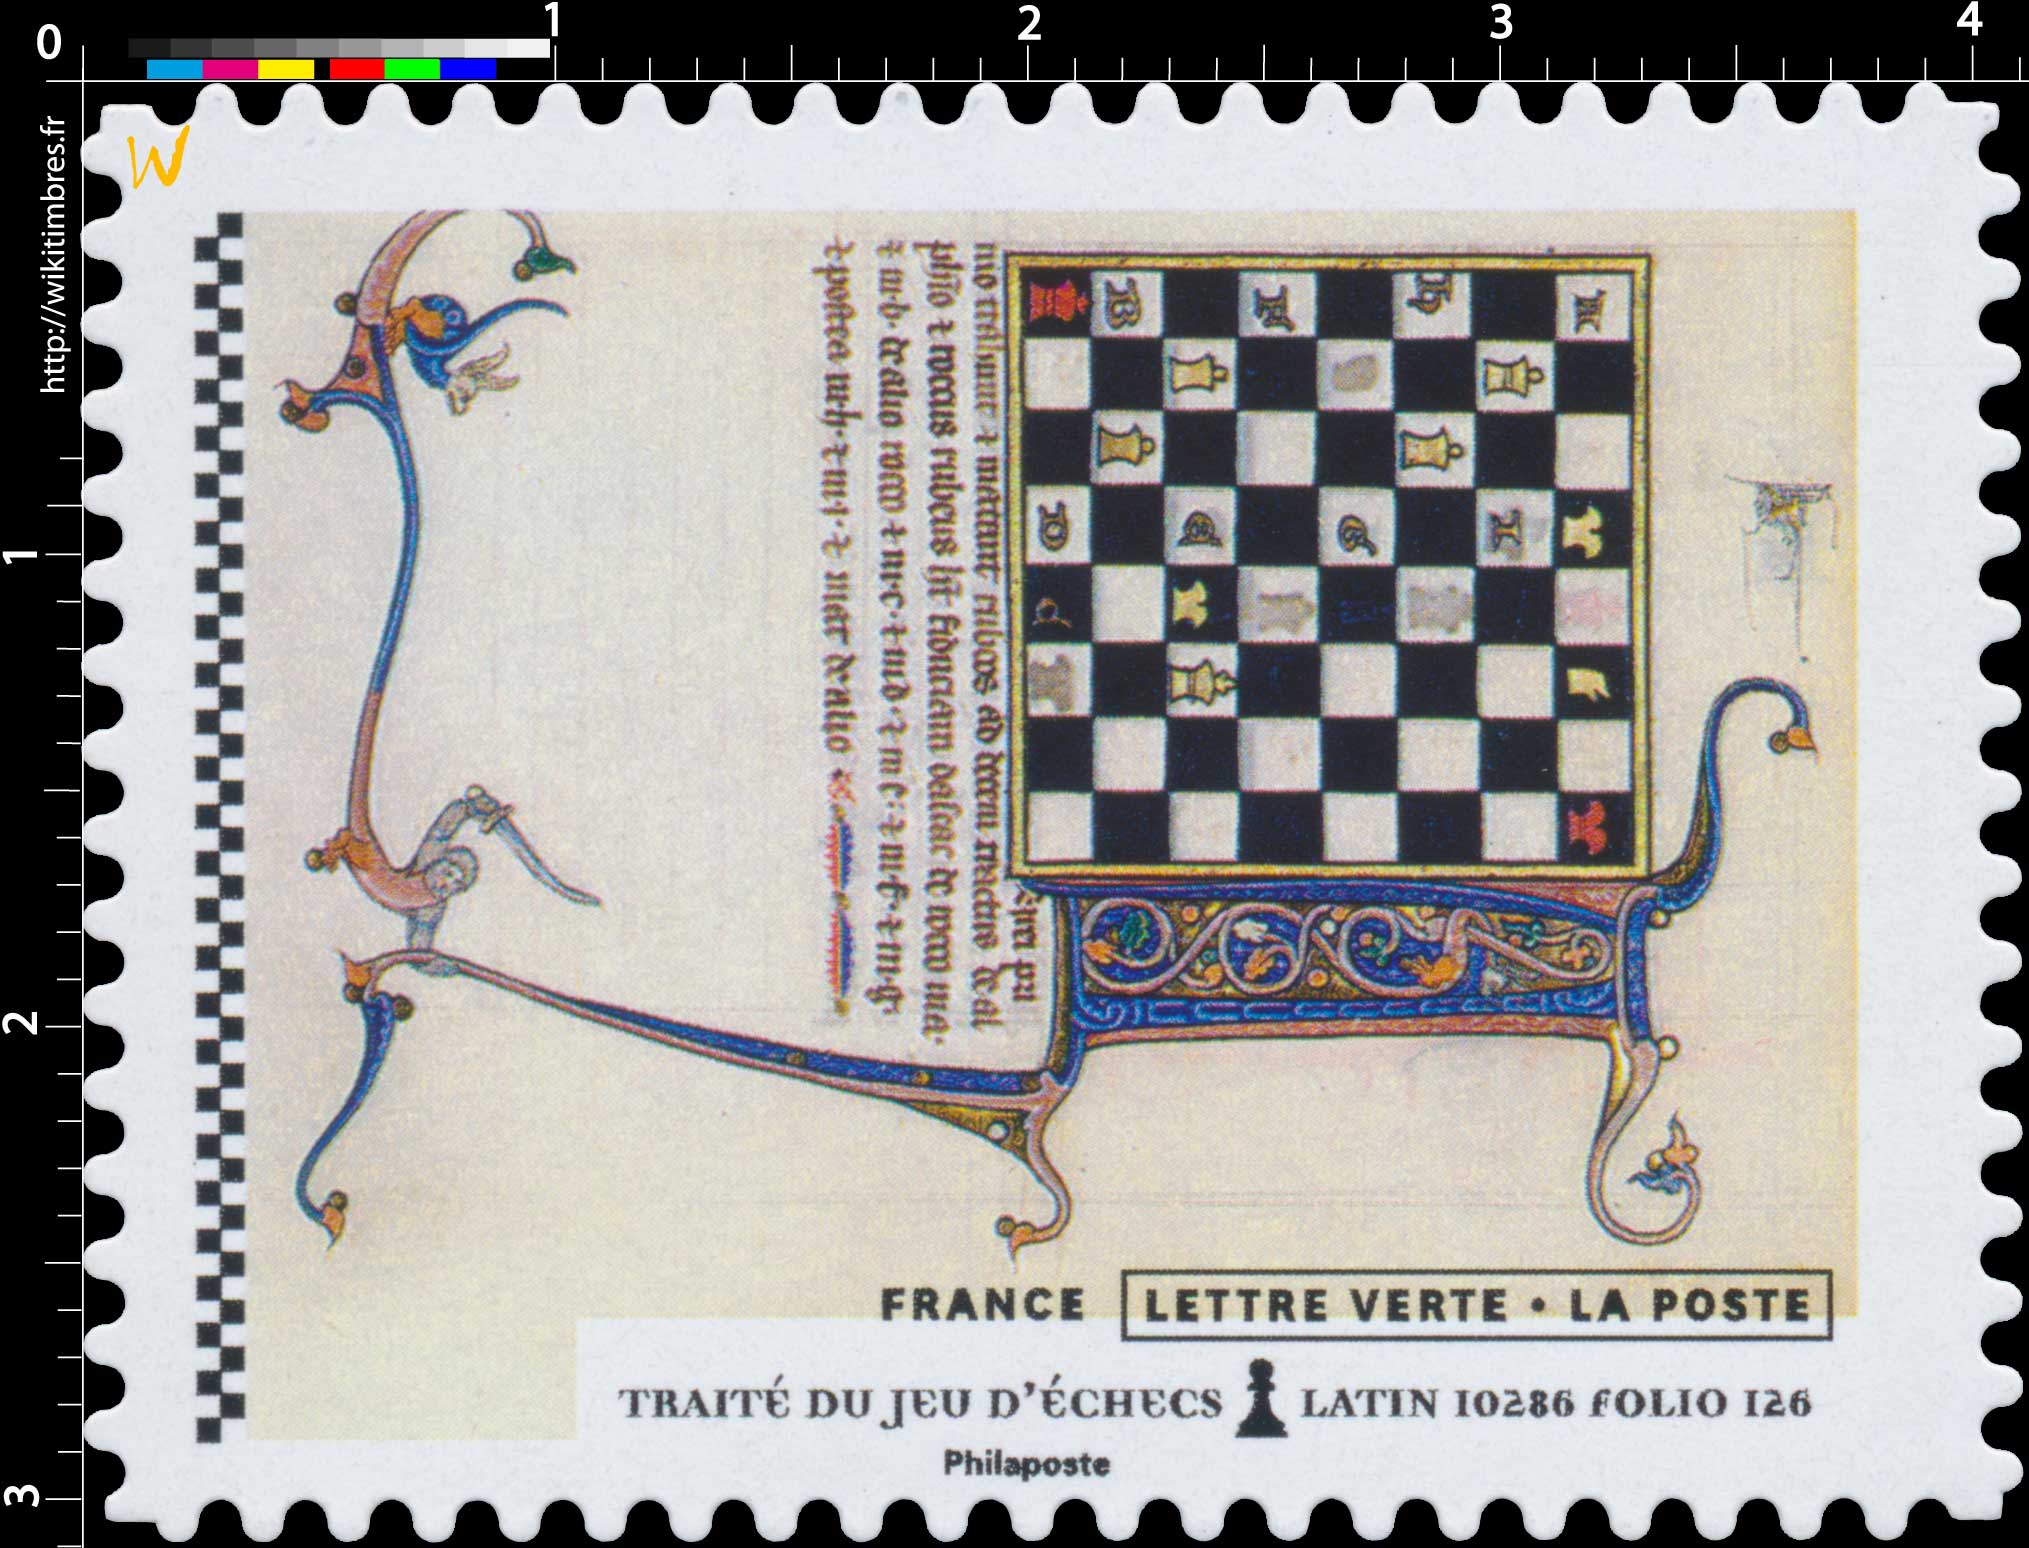 2021 Traité du jeu d'échecs latin 10286 folio 126